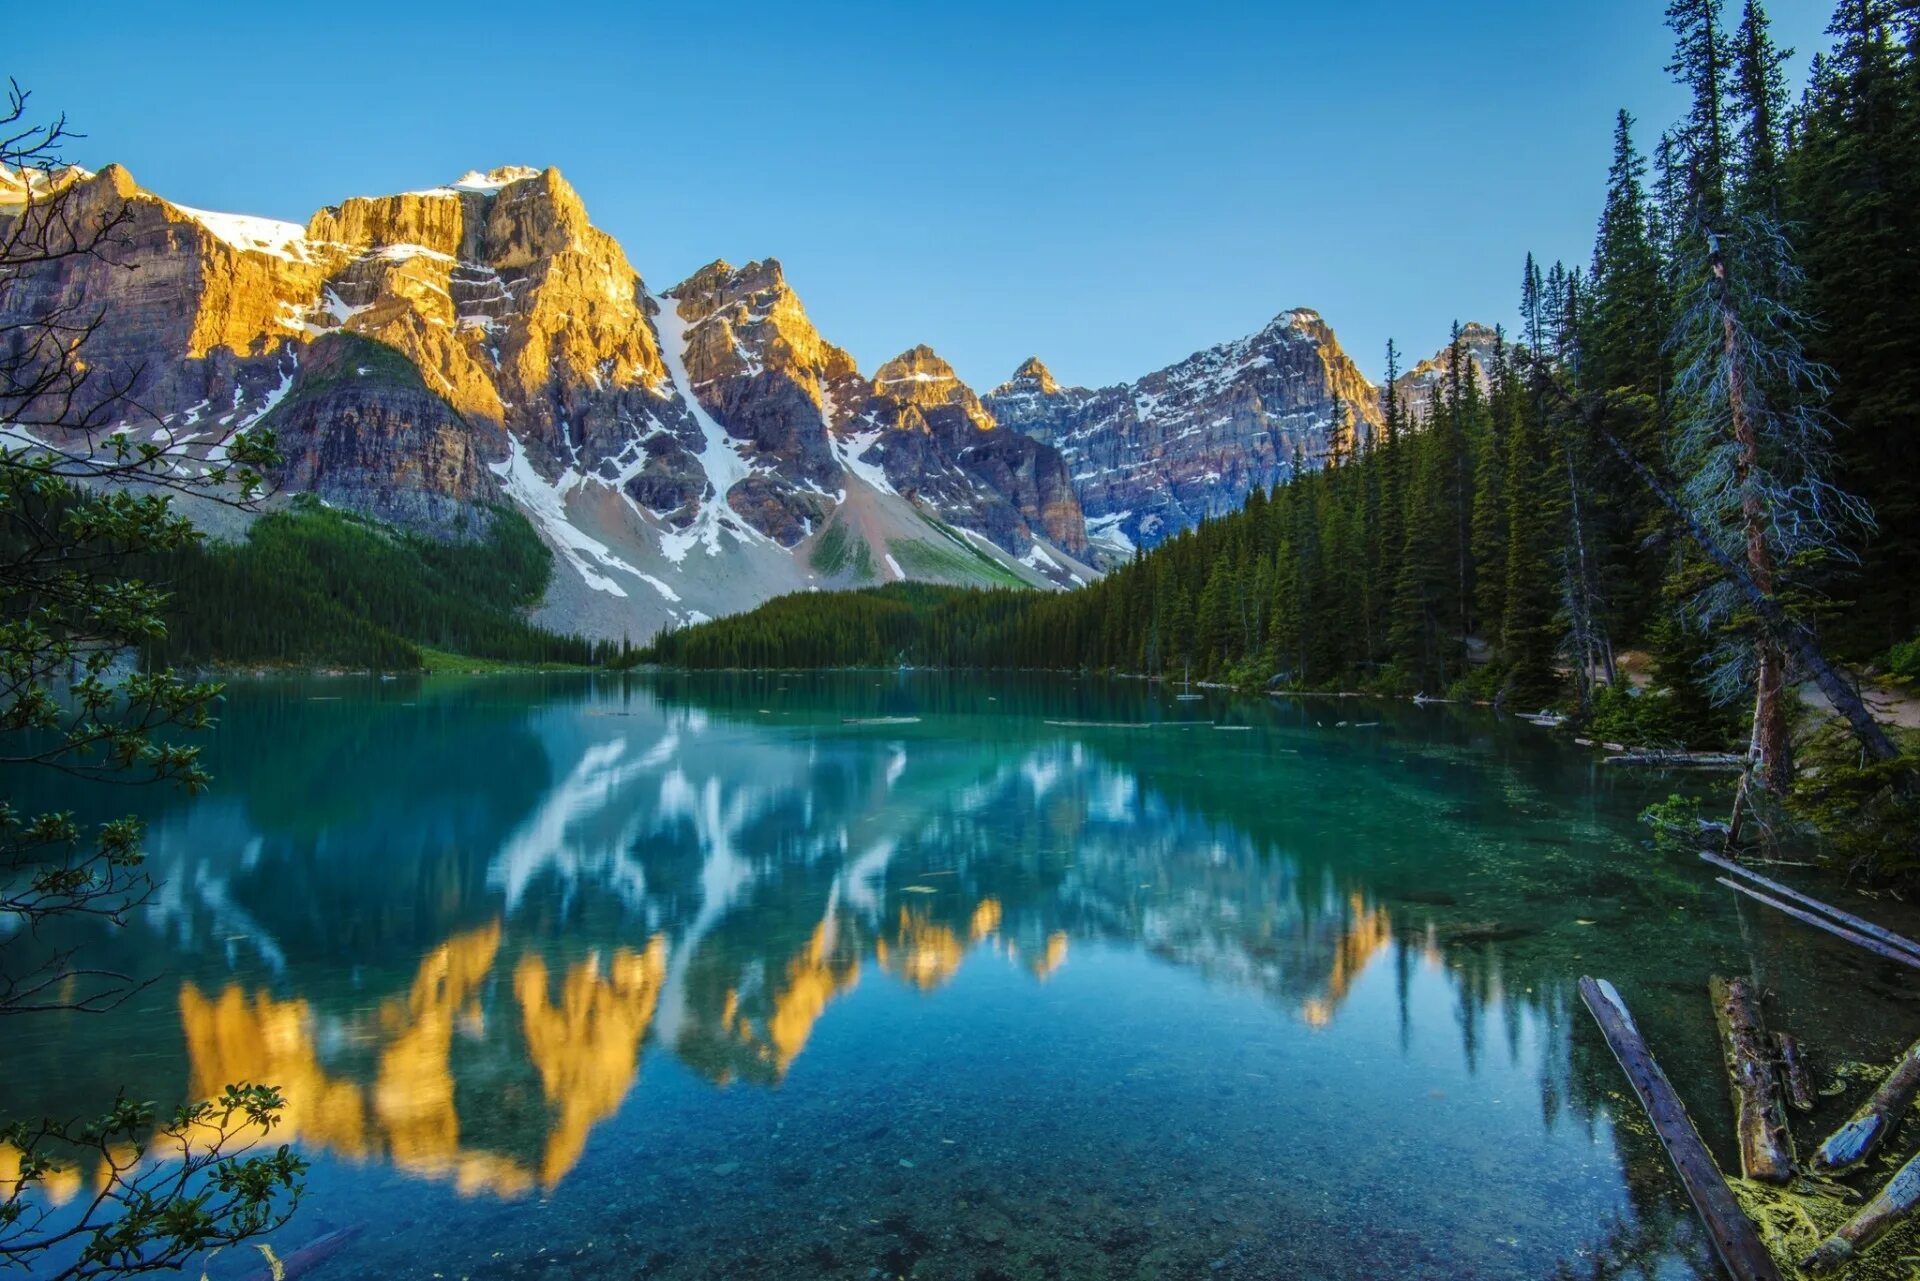 Картинка на обои высокого качества. Озеро Морейн в Канаде. Озеро Морейн. Национальный парк Банф осень. Горное озеро Фонотов. Изображение природы.